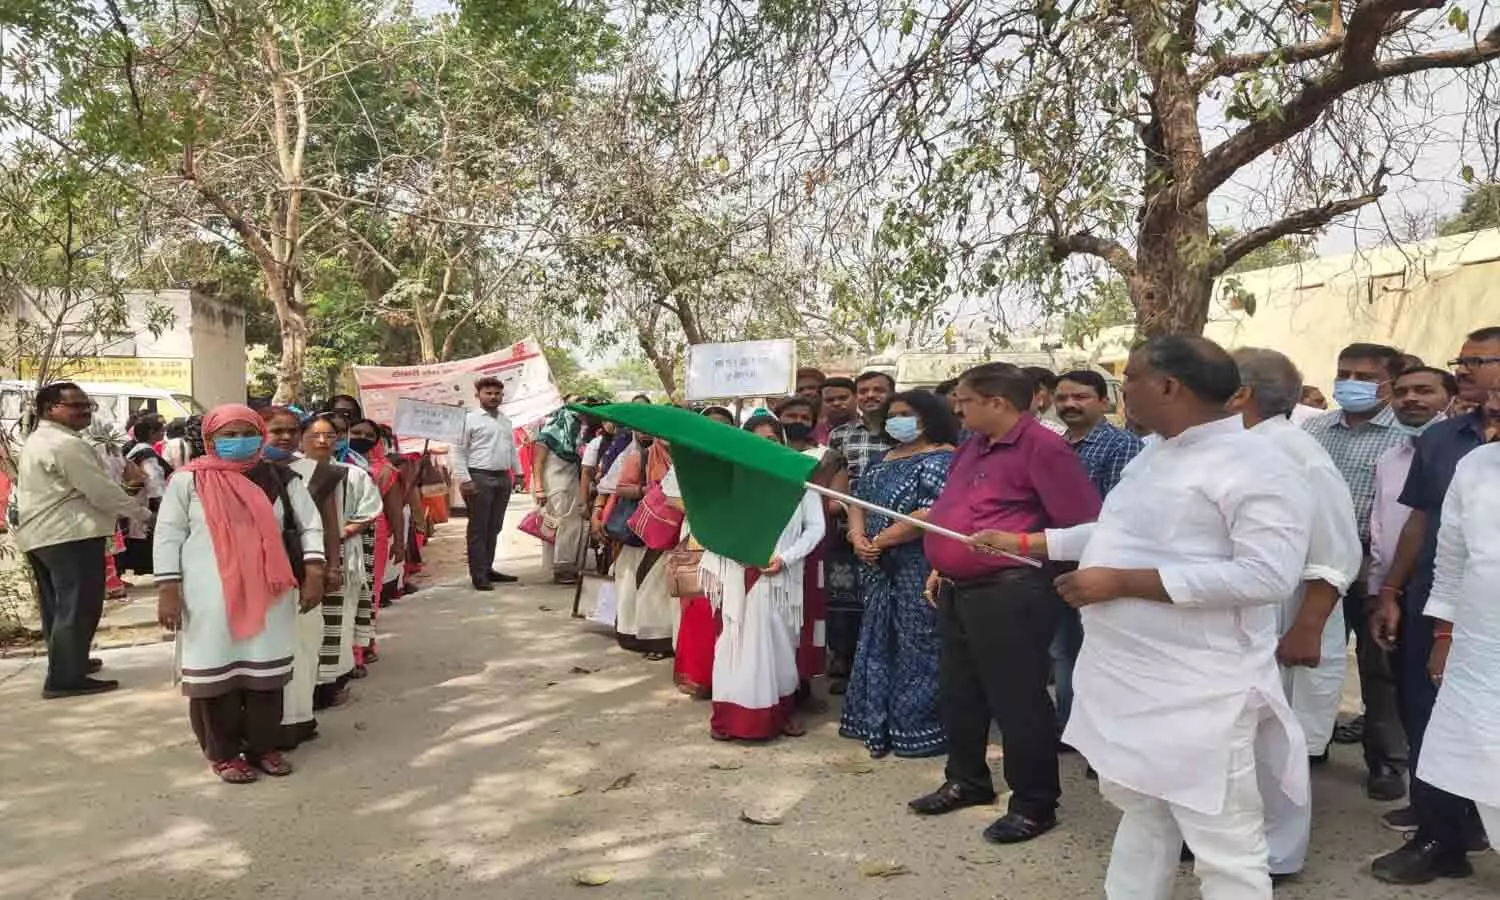 Jaunpur News: जिले में विशेष संचारी रोग नियंत्रण अभियान शुरू, मंत्री गिरीश चन्द यादव ने दिखायी हरी झण्डी